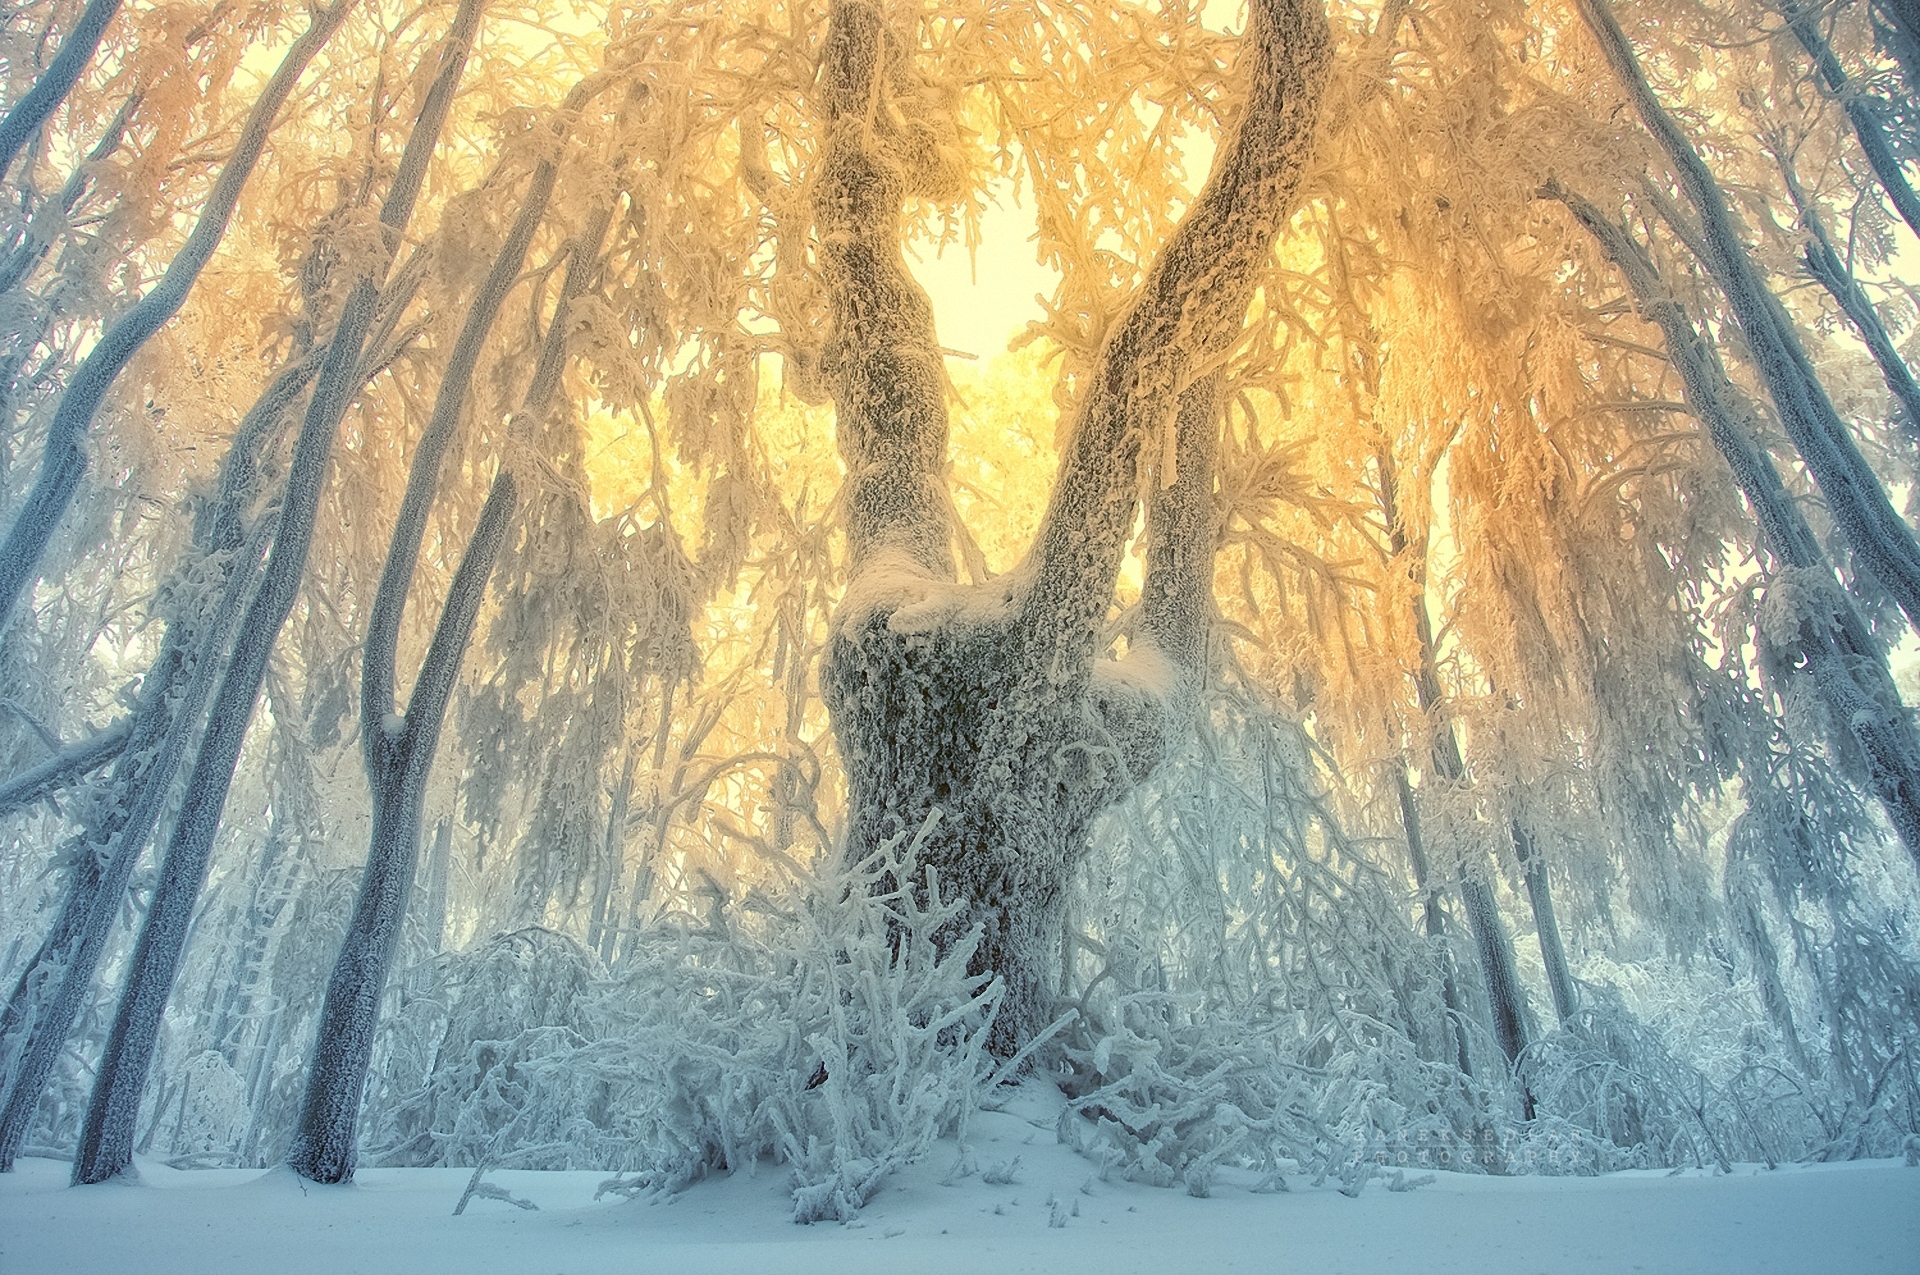 Фф и в морозном лесу навеки останусь. Сказочный зимний лес. Иней на деревьях. Зимний лес солнце. Необычные зимние пейзажи.